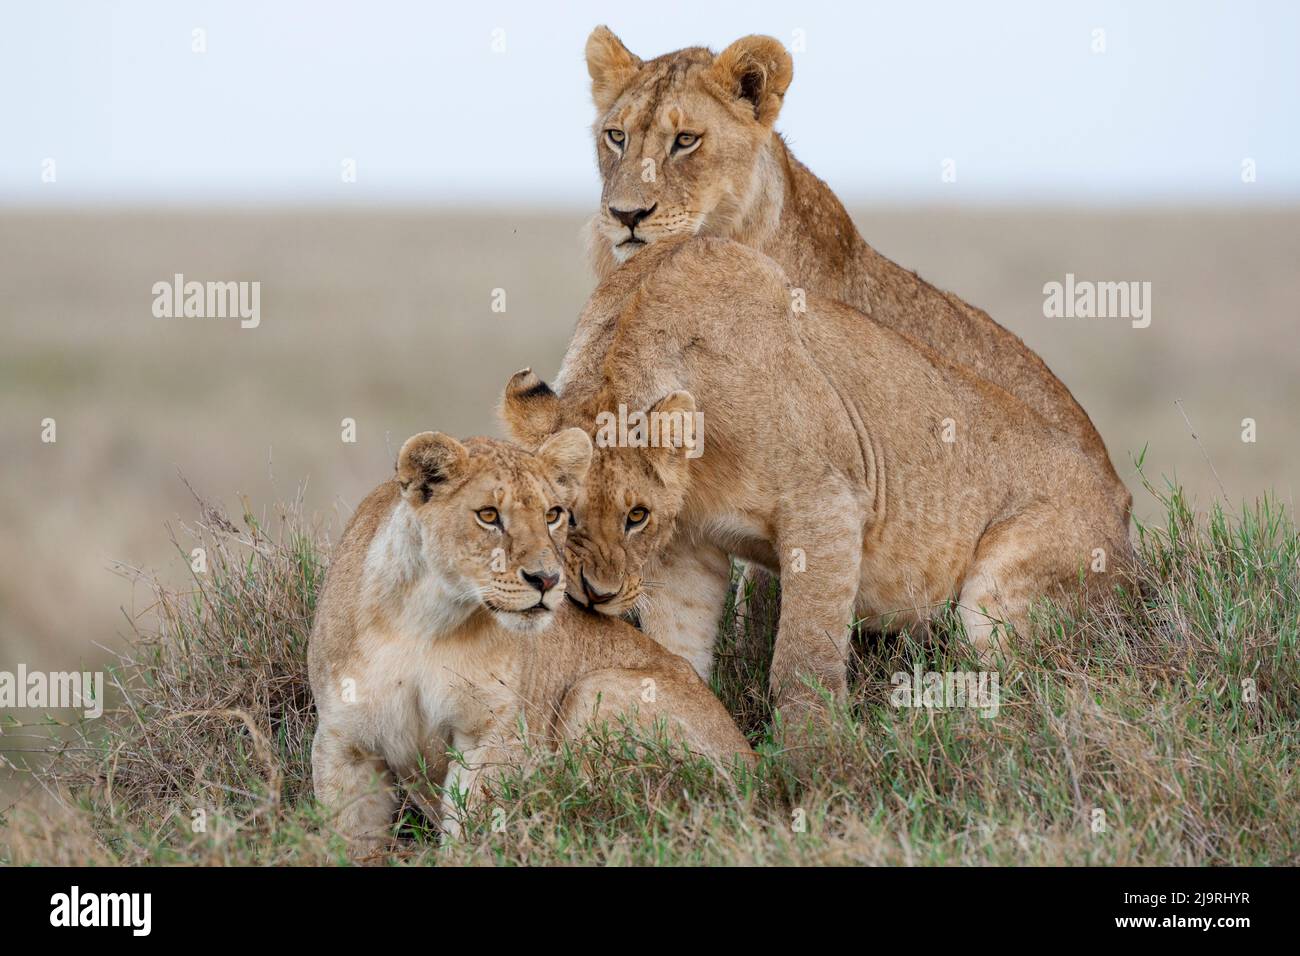 África, Tanzania. Una leona se sienta con sus dos cachorros. Foto de stock